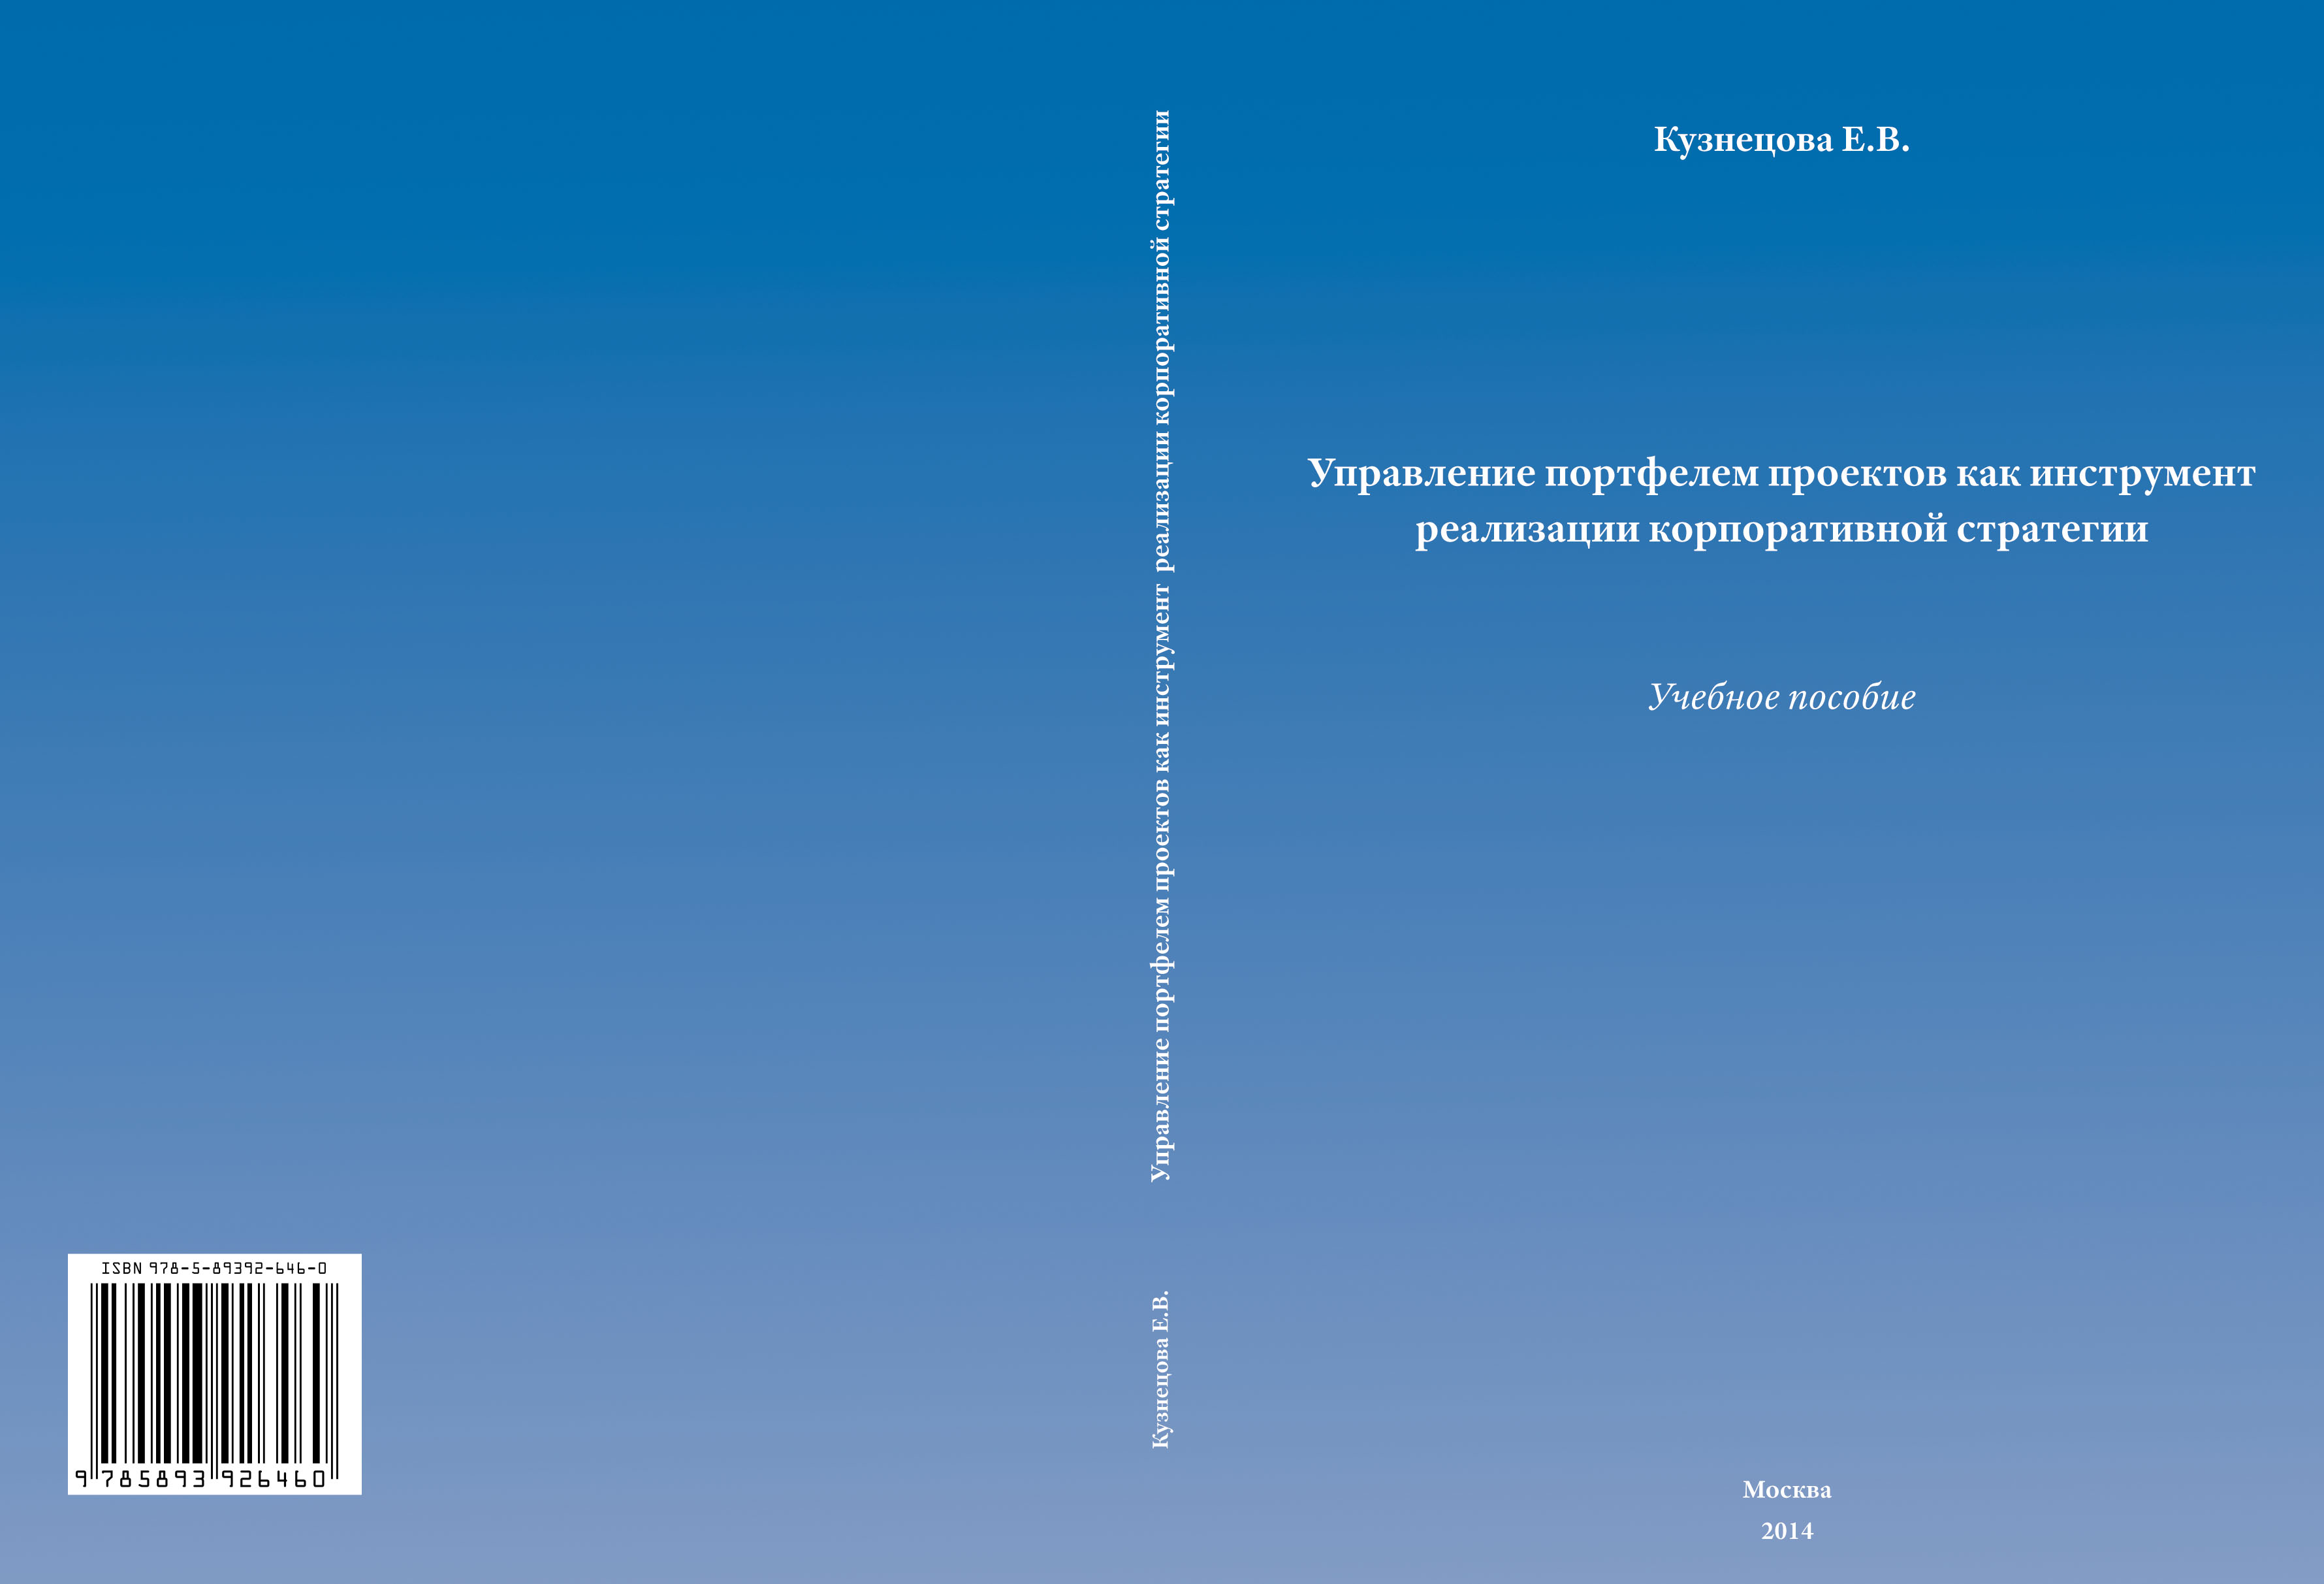 Управление портфелем проектов как инструмент реализации корпоративной стратегии: учебное пособие